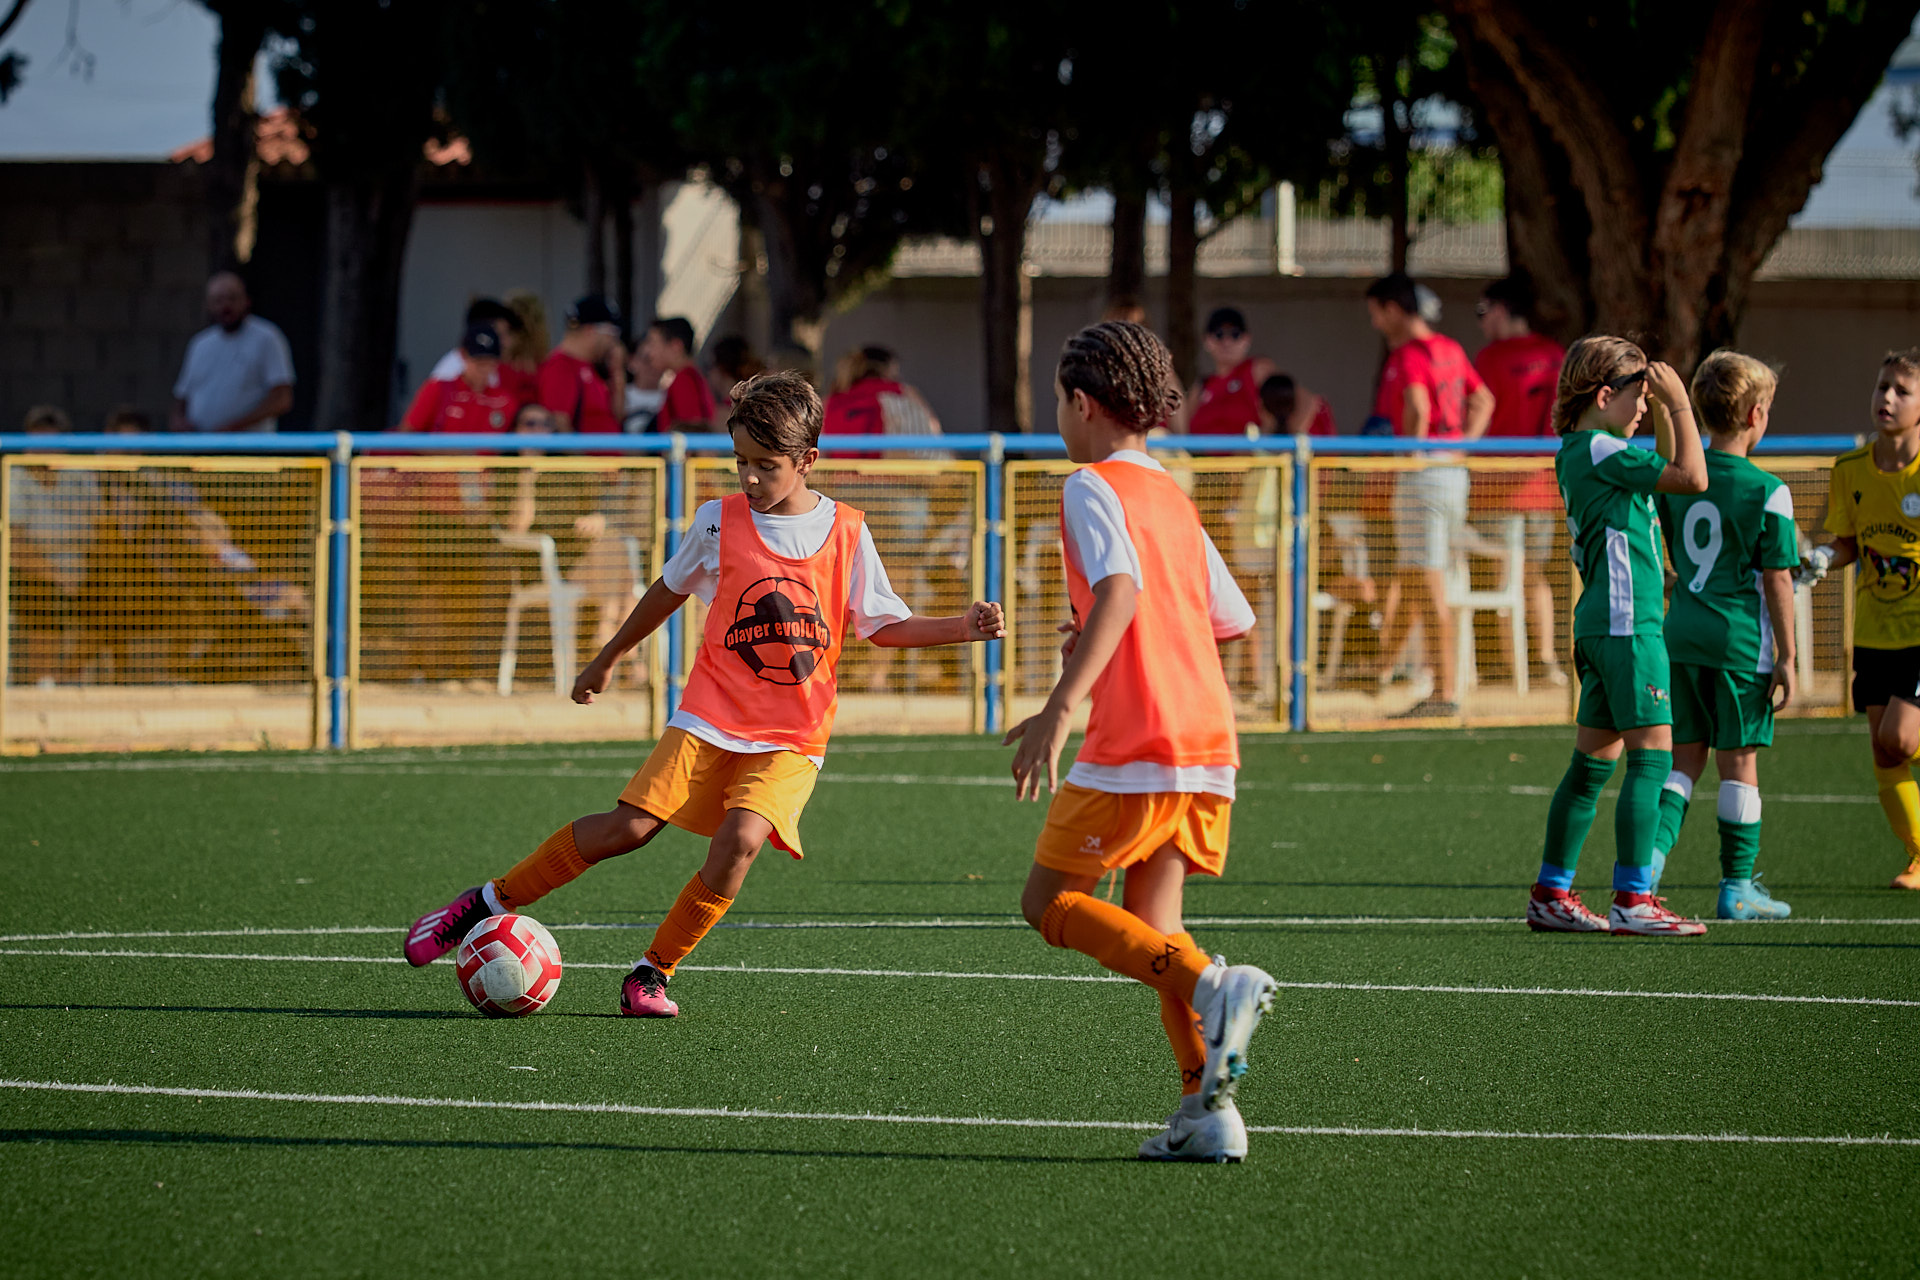 Fotografía - Equipo de fútbol entrenando antes del partido: Jugadores realizando ejercicios técnicos para prepararse.